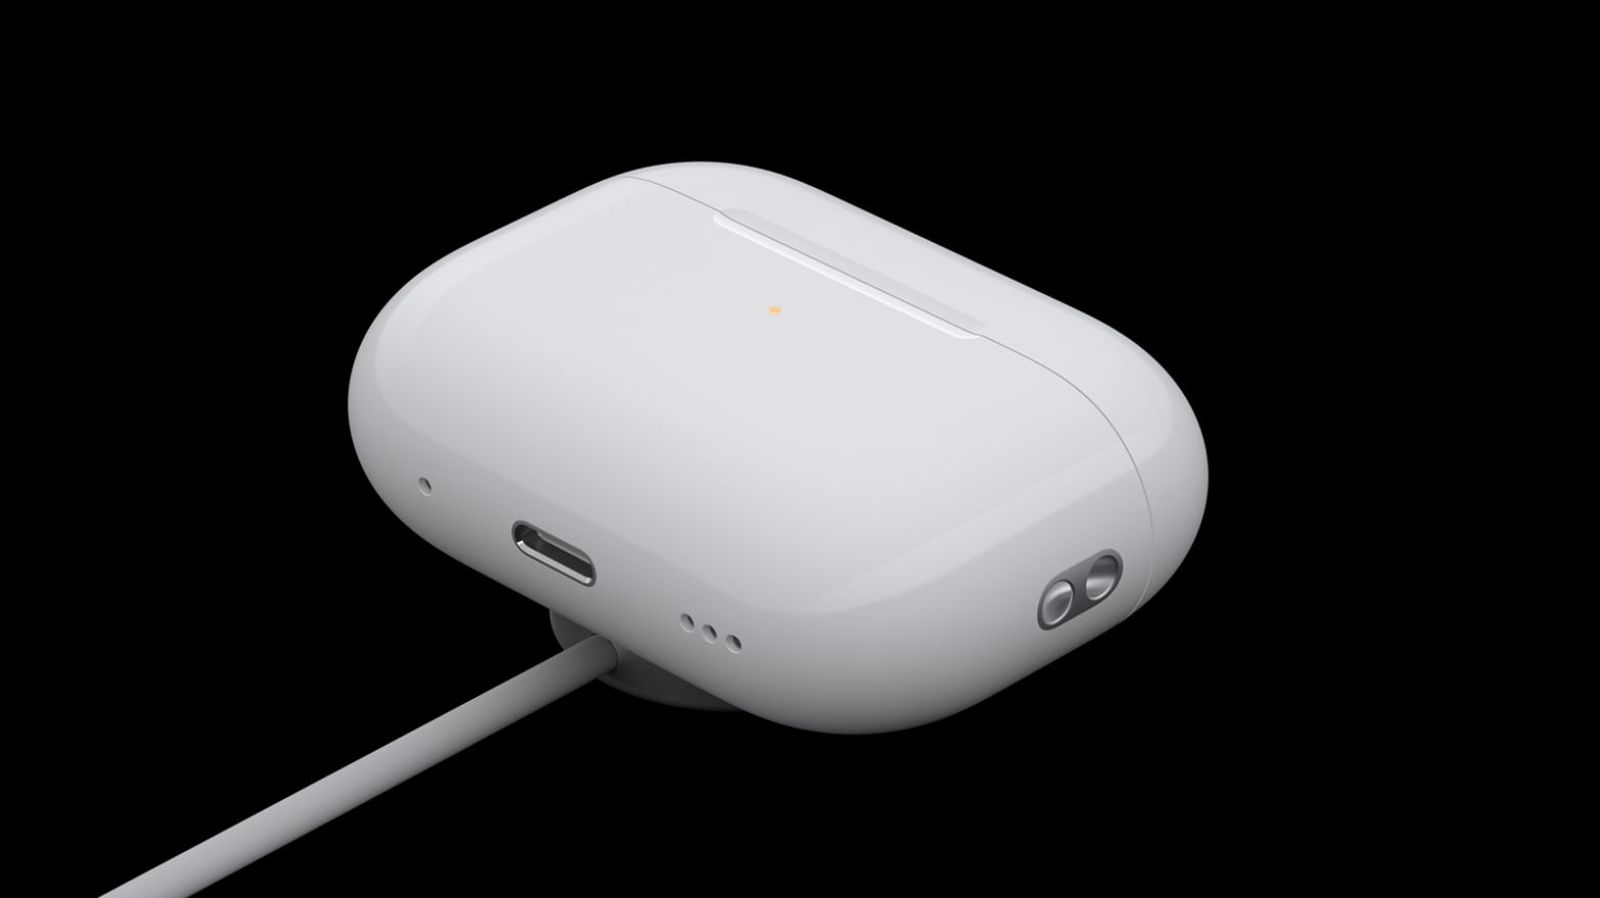 Z iPhoneIslam.com, Białe etui do bezprzewodowego ładowania słuchawek AirPods 4 ze wskaźnikiem LED, podłączone do kabla ładującego, na czarnym tle.